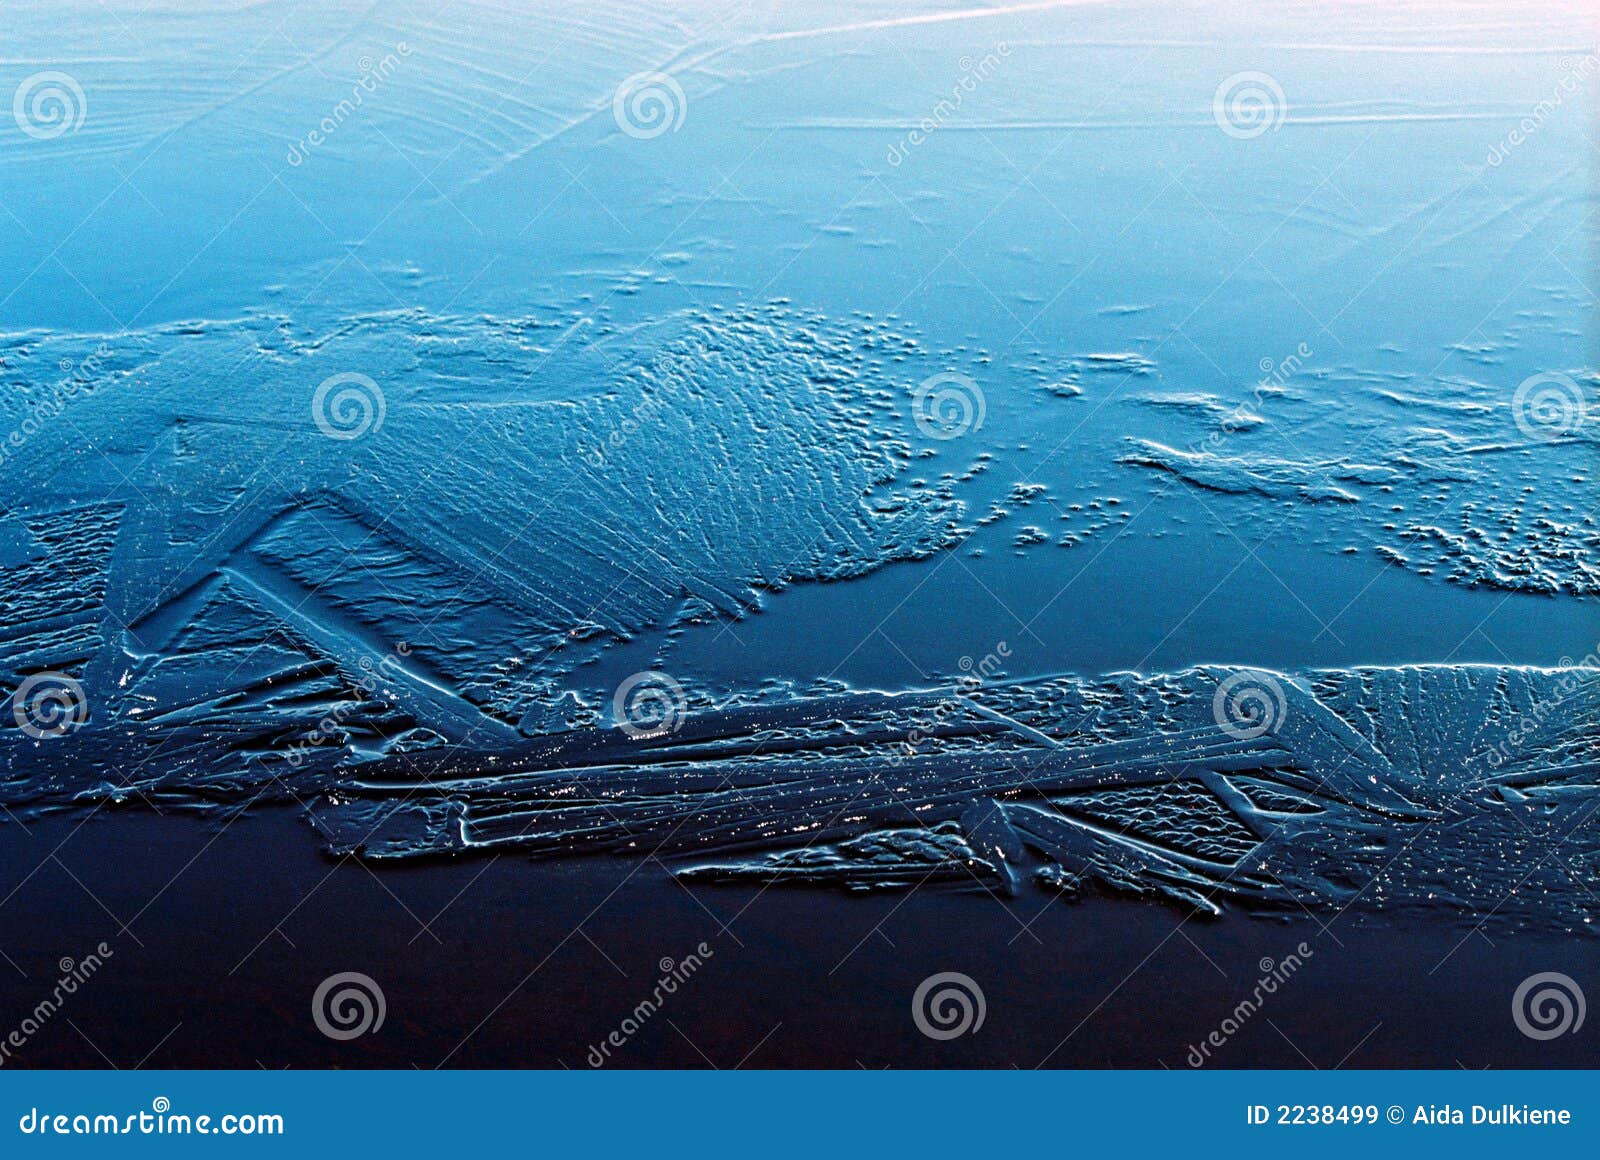 Cristale de gheață. închiderea cristalelor de gheață pe o suprafață de culoare albastru-gradient